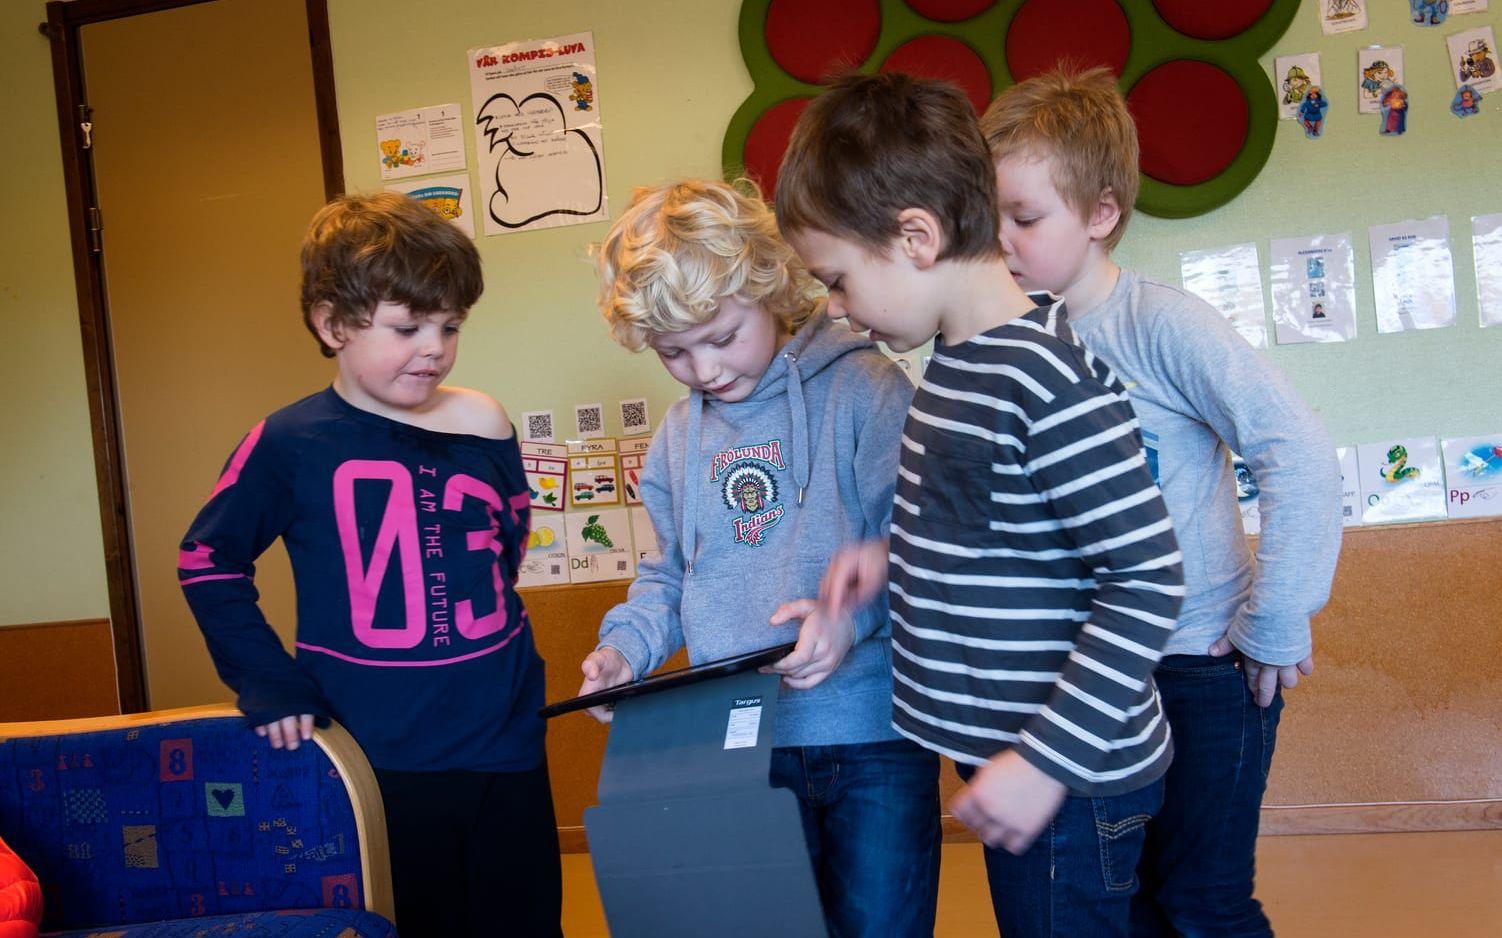 Med hjälp av en läsplatta kan barnen skanna in en Qr-kod och få fram en saga eller en siffra. De vet då hur siffran ska uttalas. Foto: Lasse Edwartz